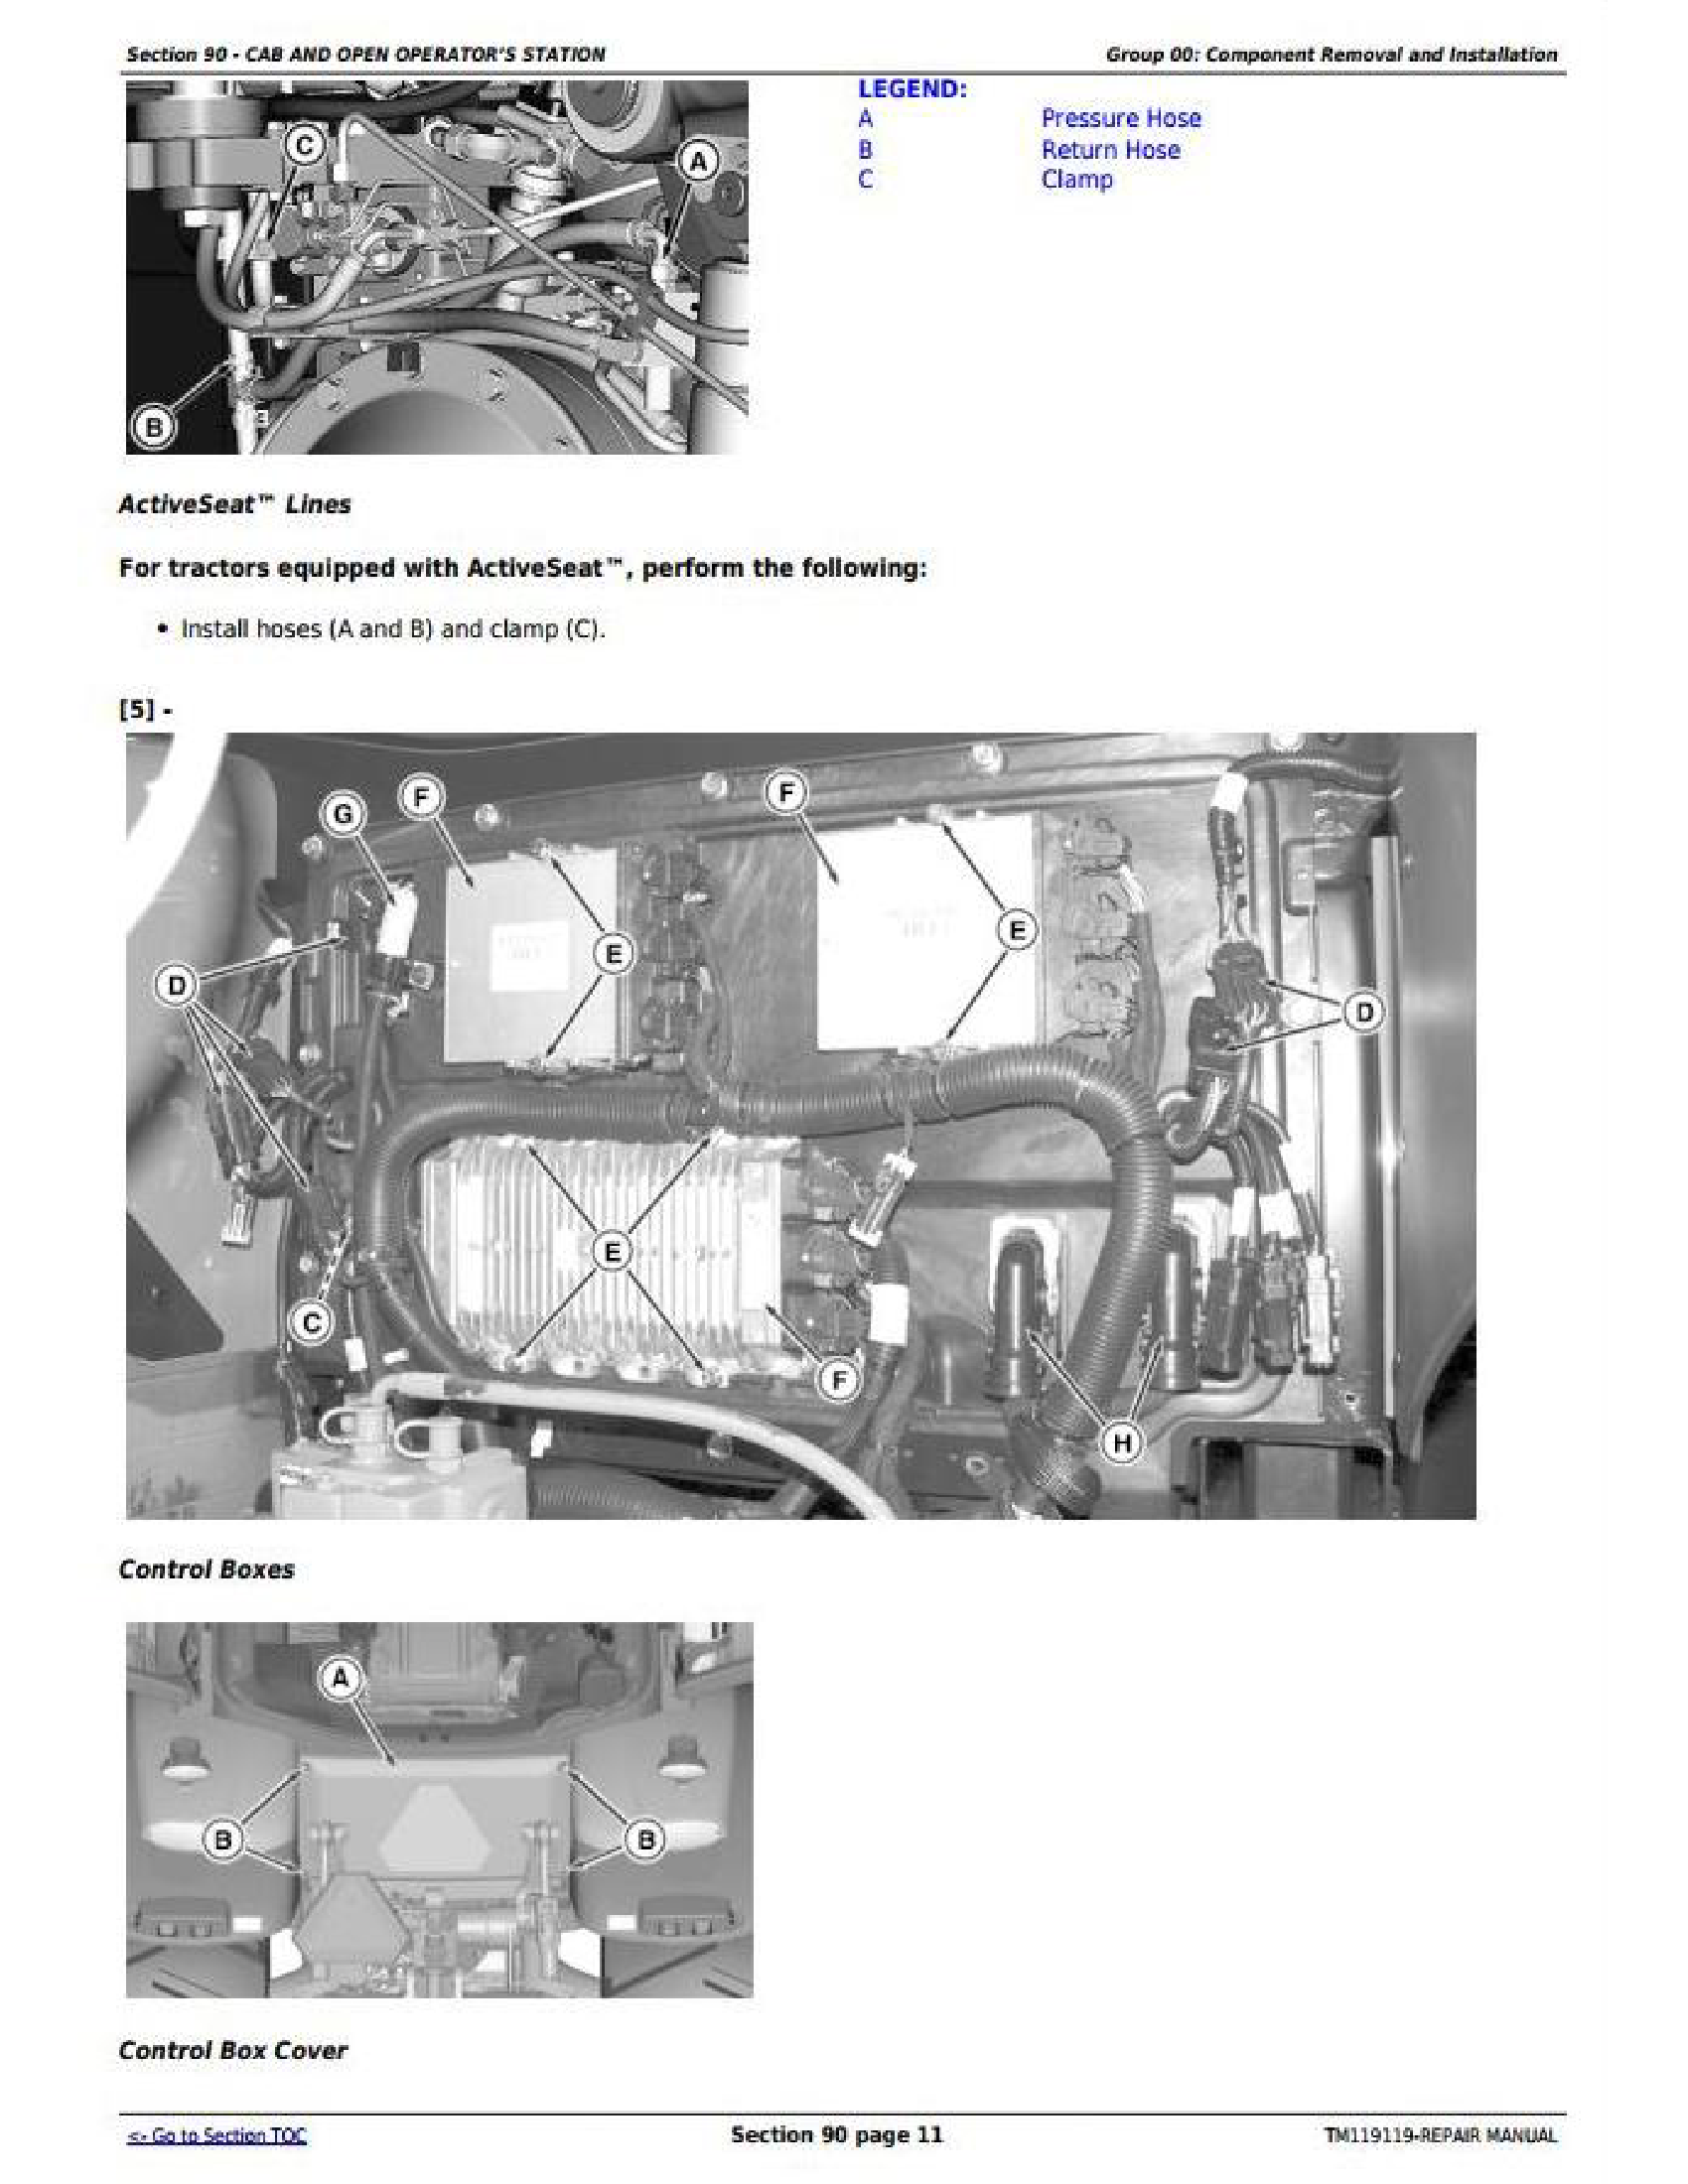 John Deere 35Czts manual pdf